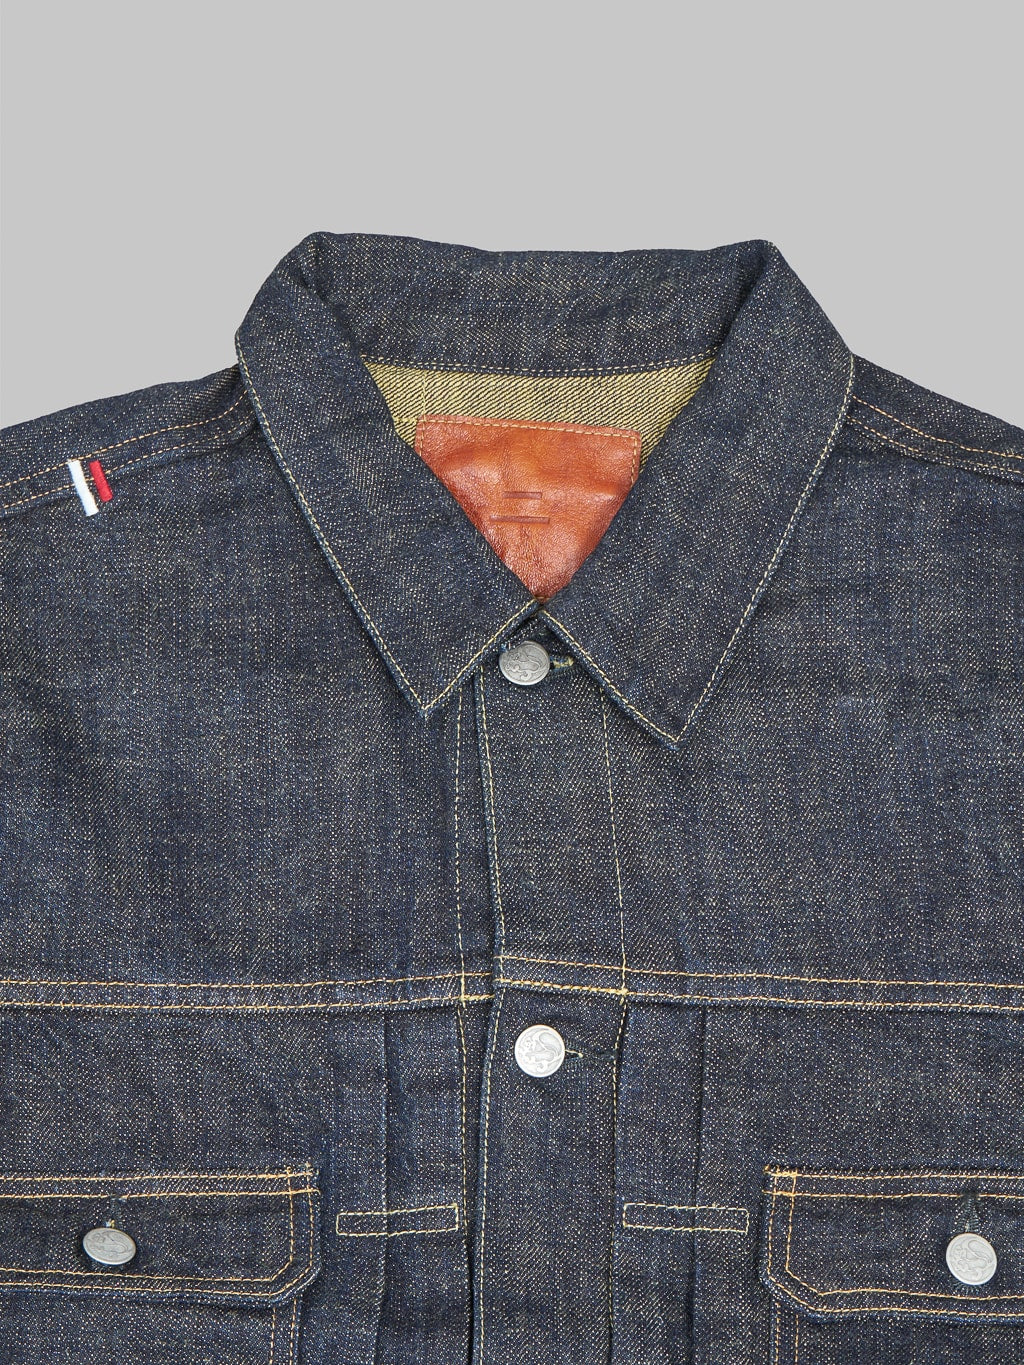 Tanuki soga selvedge denim type II jacket collar detail